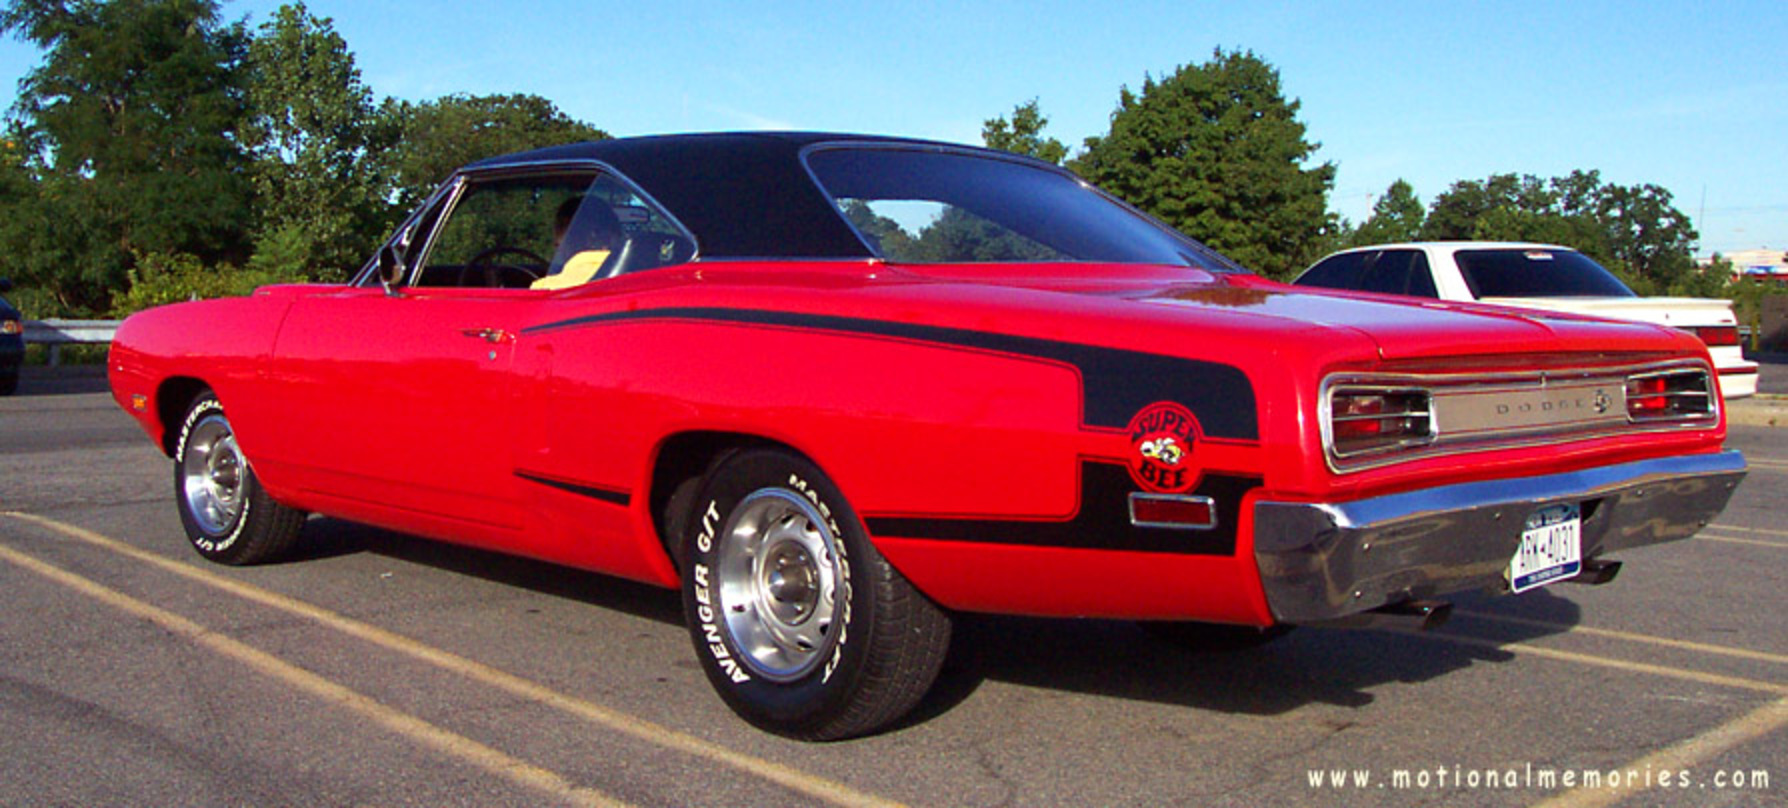 1970 Dodge Super Bee red